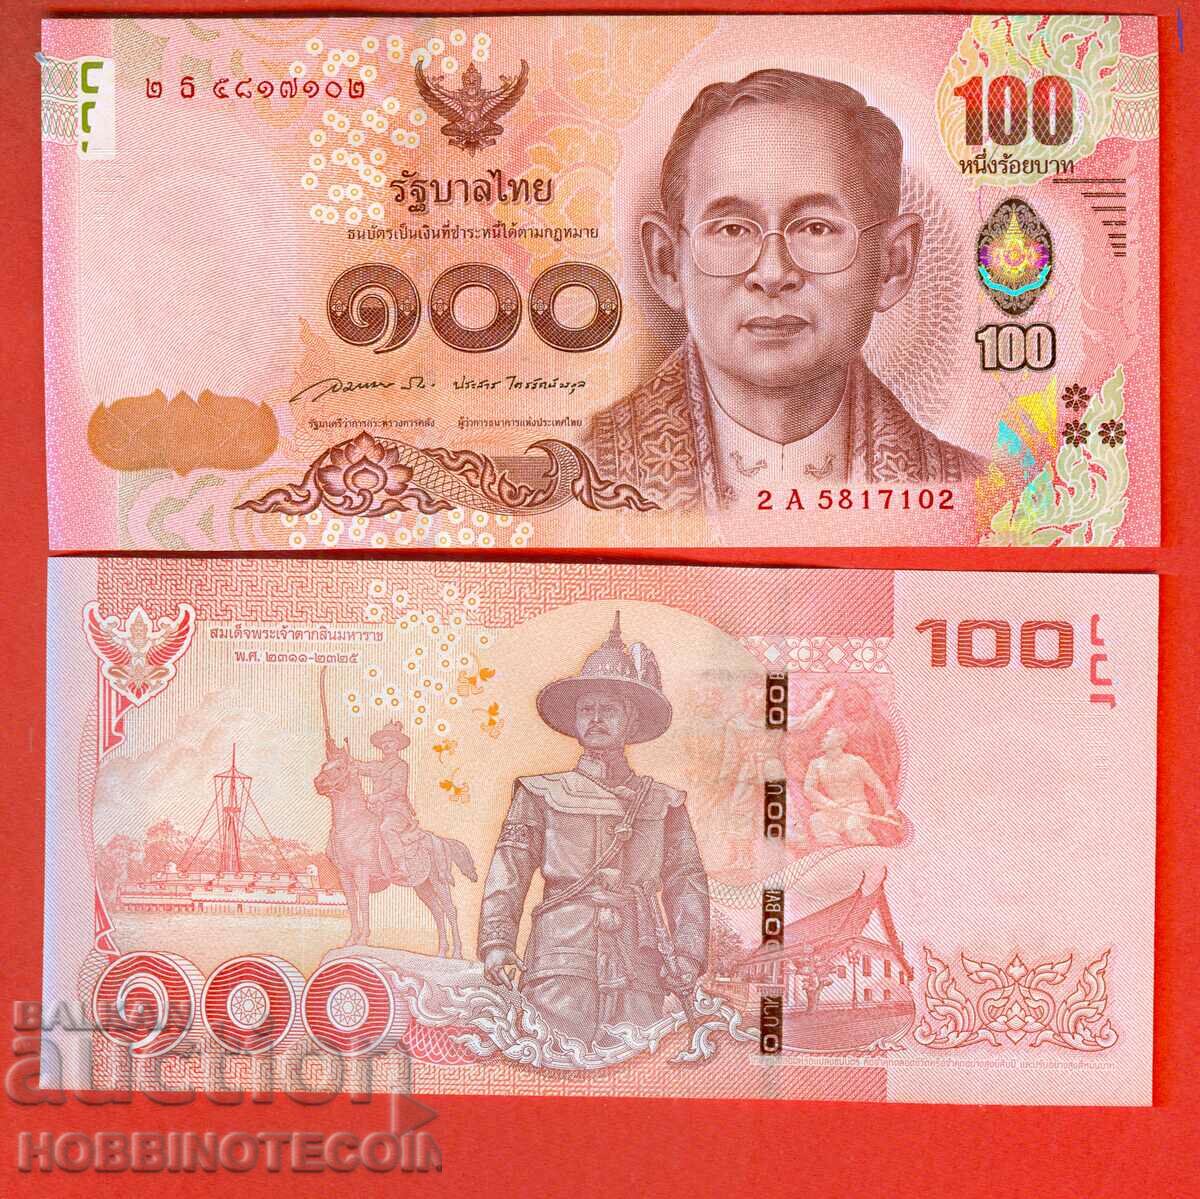 THAILAND THAILAND 100 BATA NEW issue 2016 NEW UNC